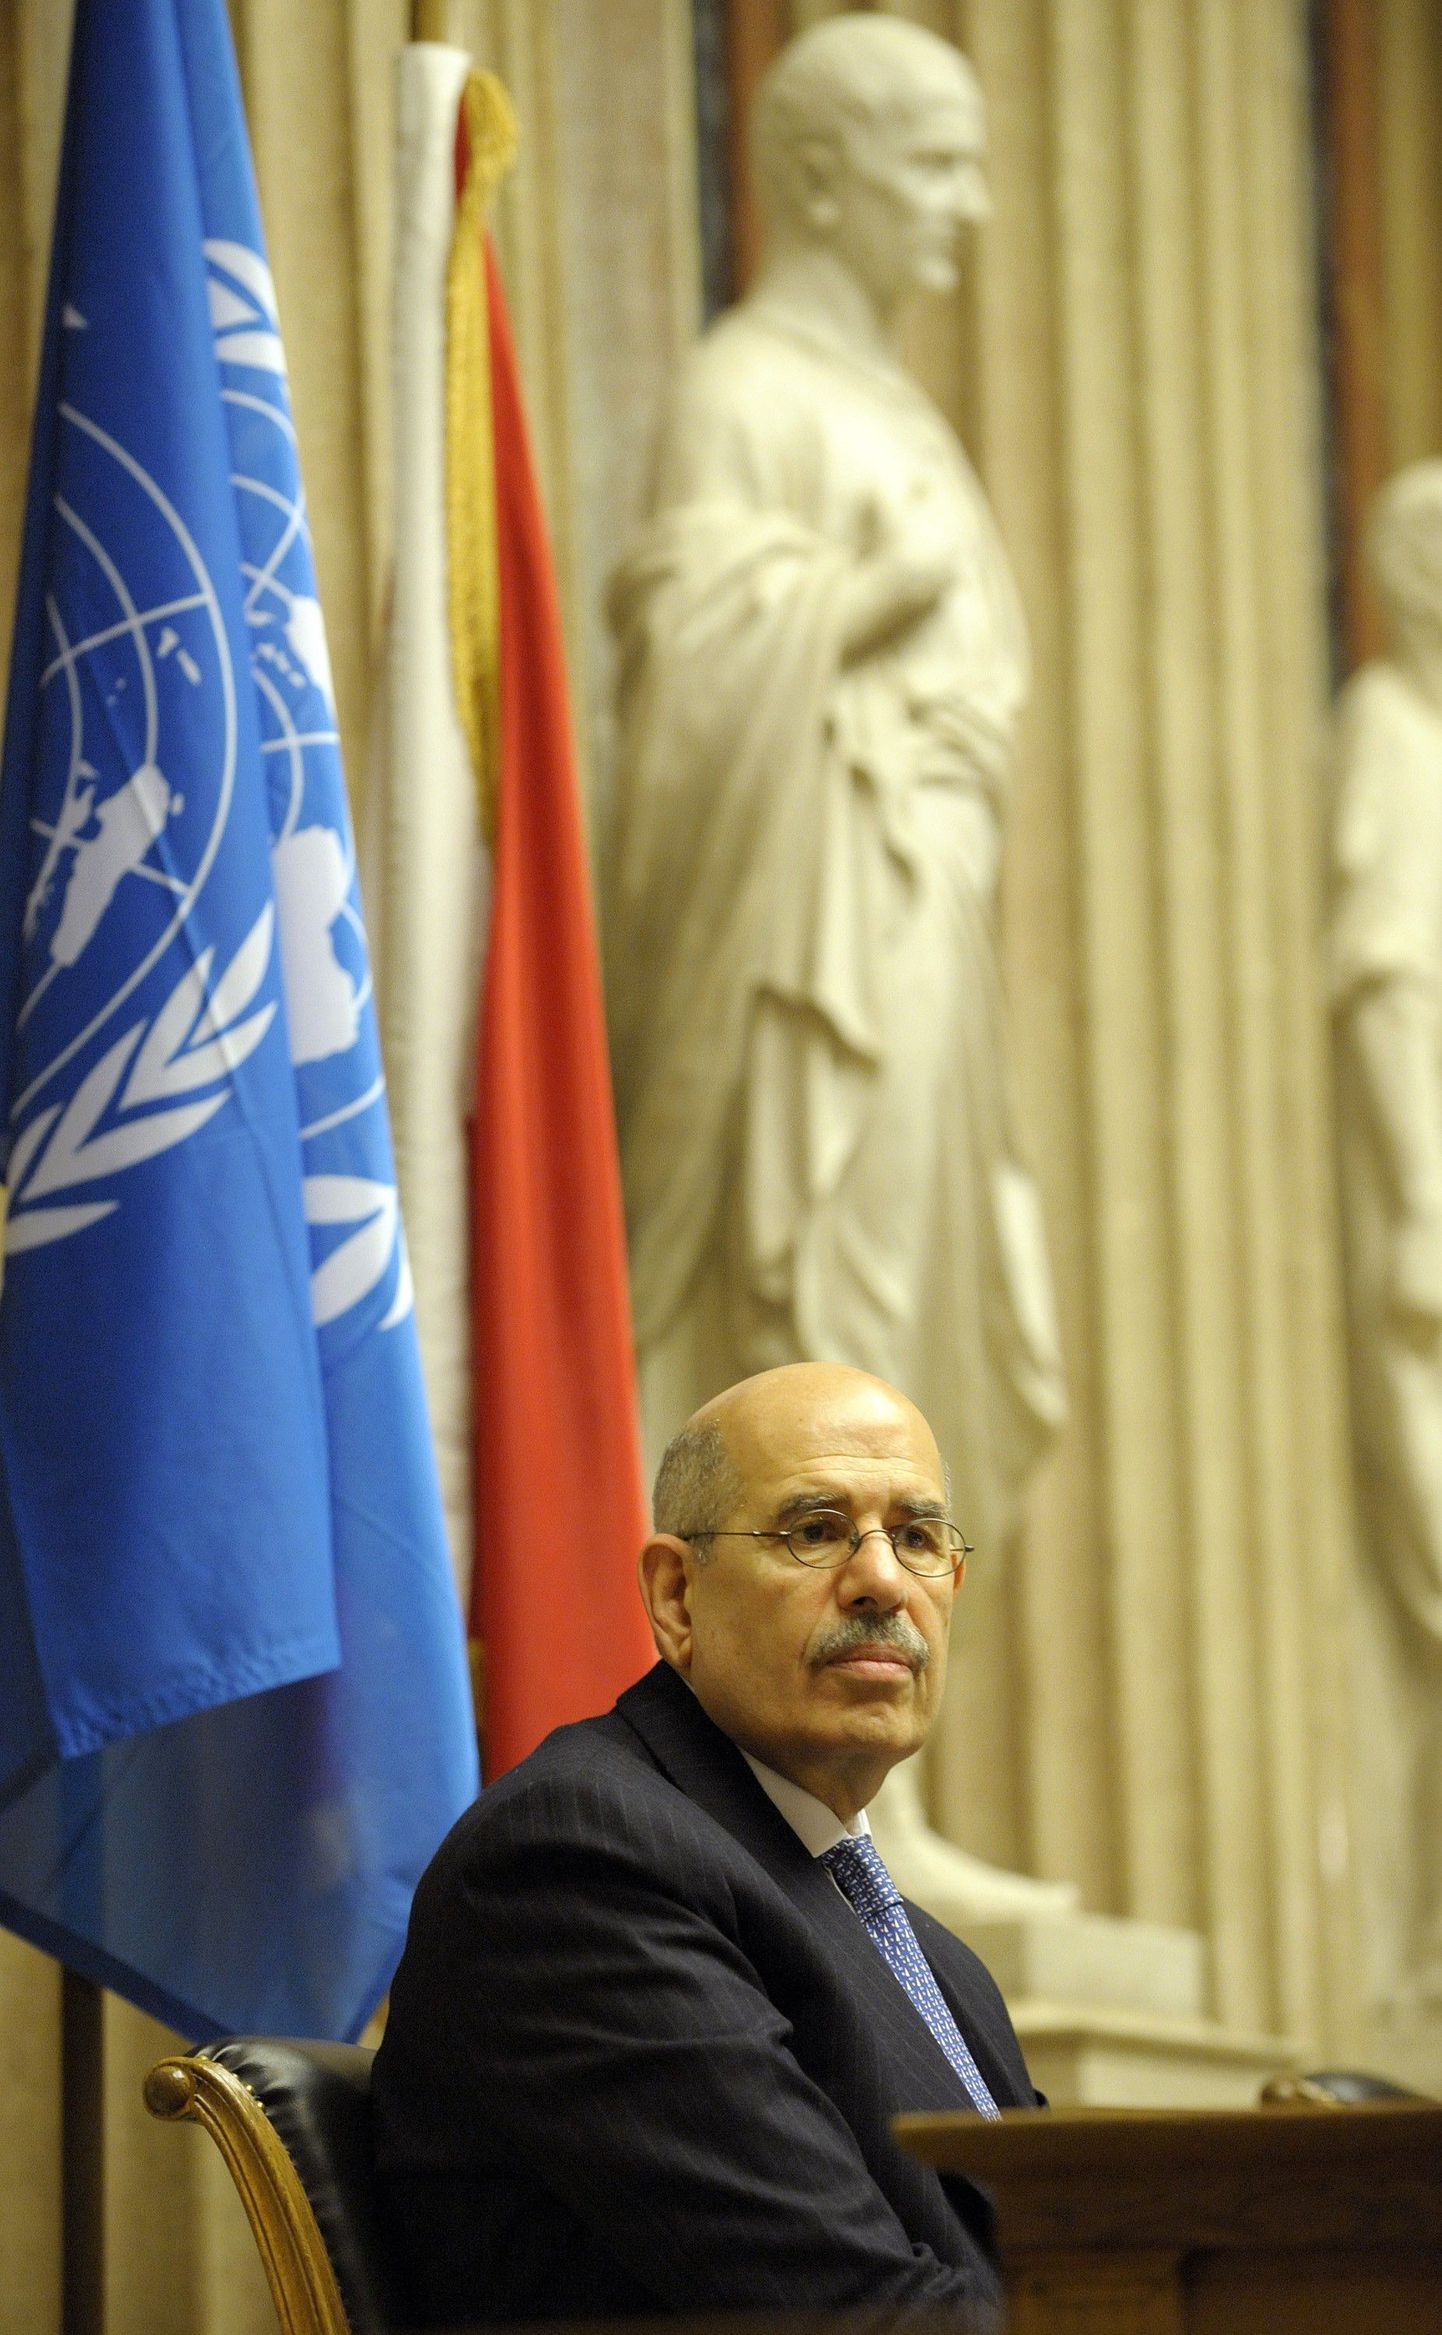 Muhamed ElBaradei